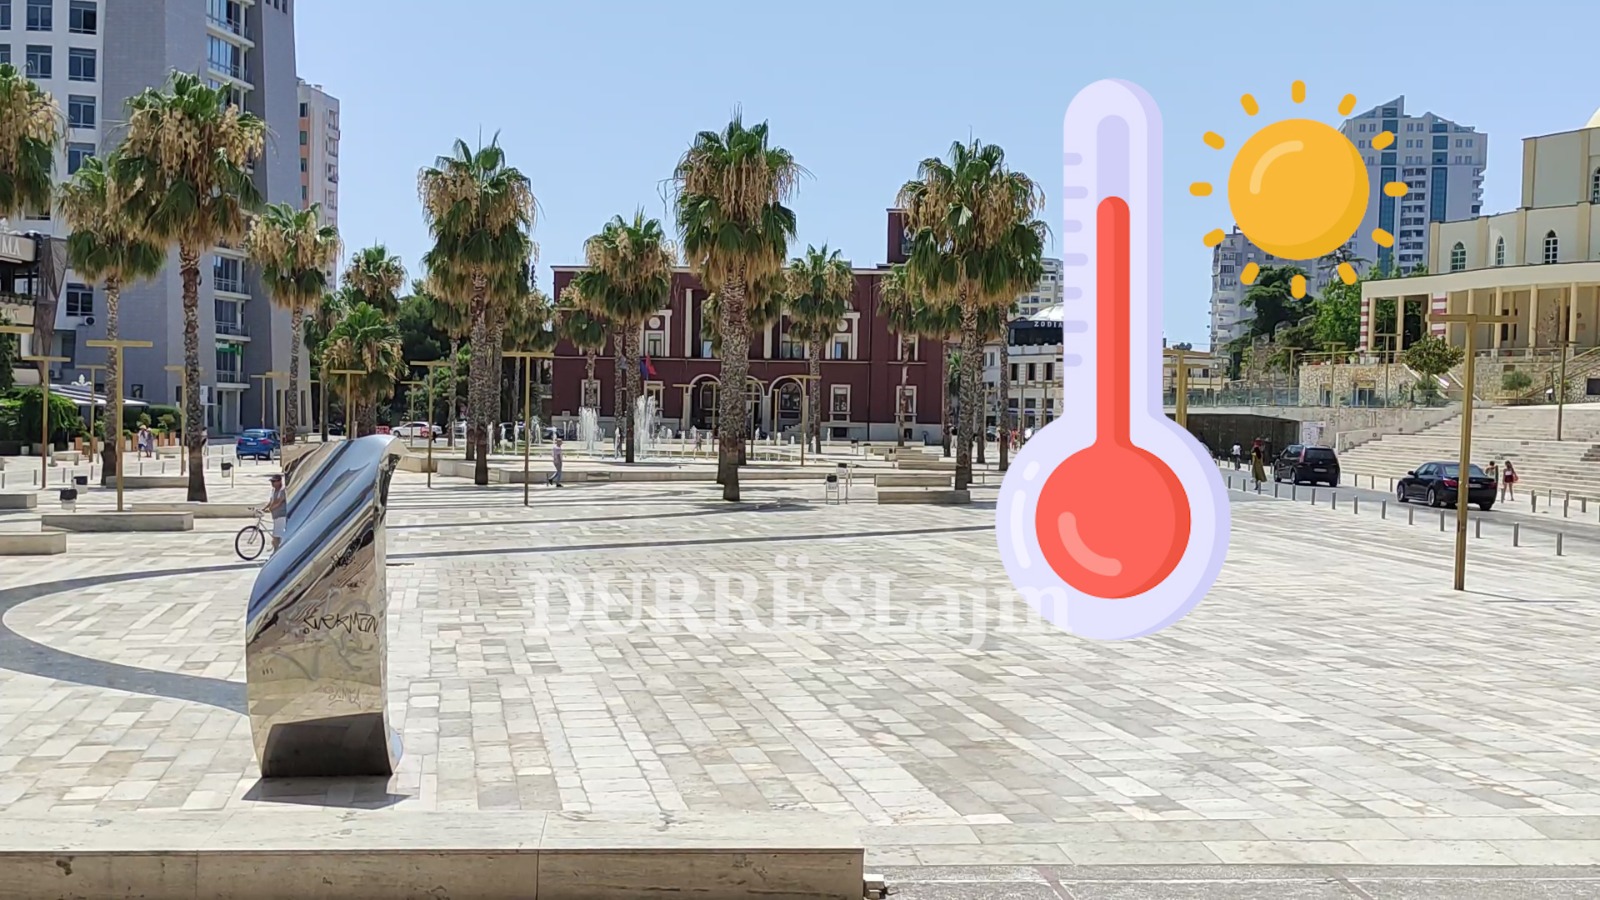 7°C më shumë në 15 vite në Durrës, Muka: Nevojiten masa konkrete, për 12 vite qyteti është drejtuar nga një kryetar injorant (VIDEO)